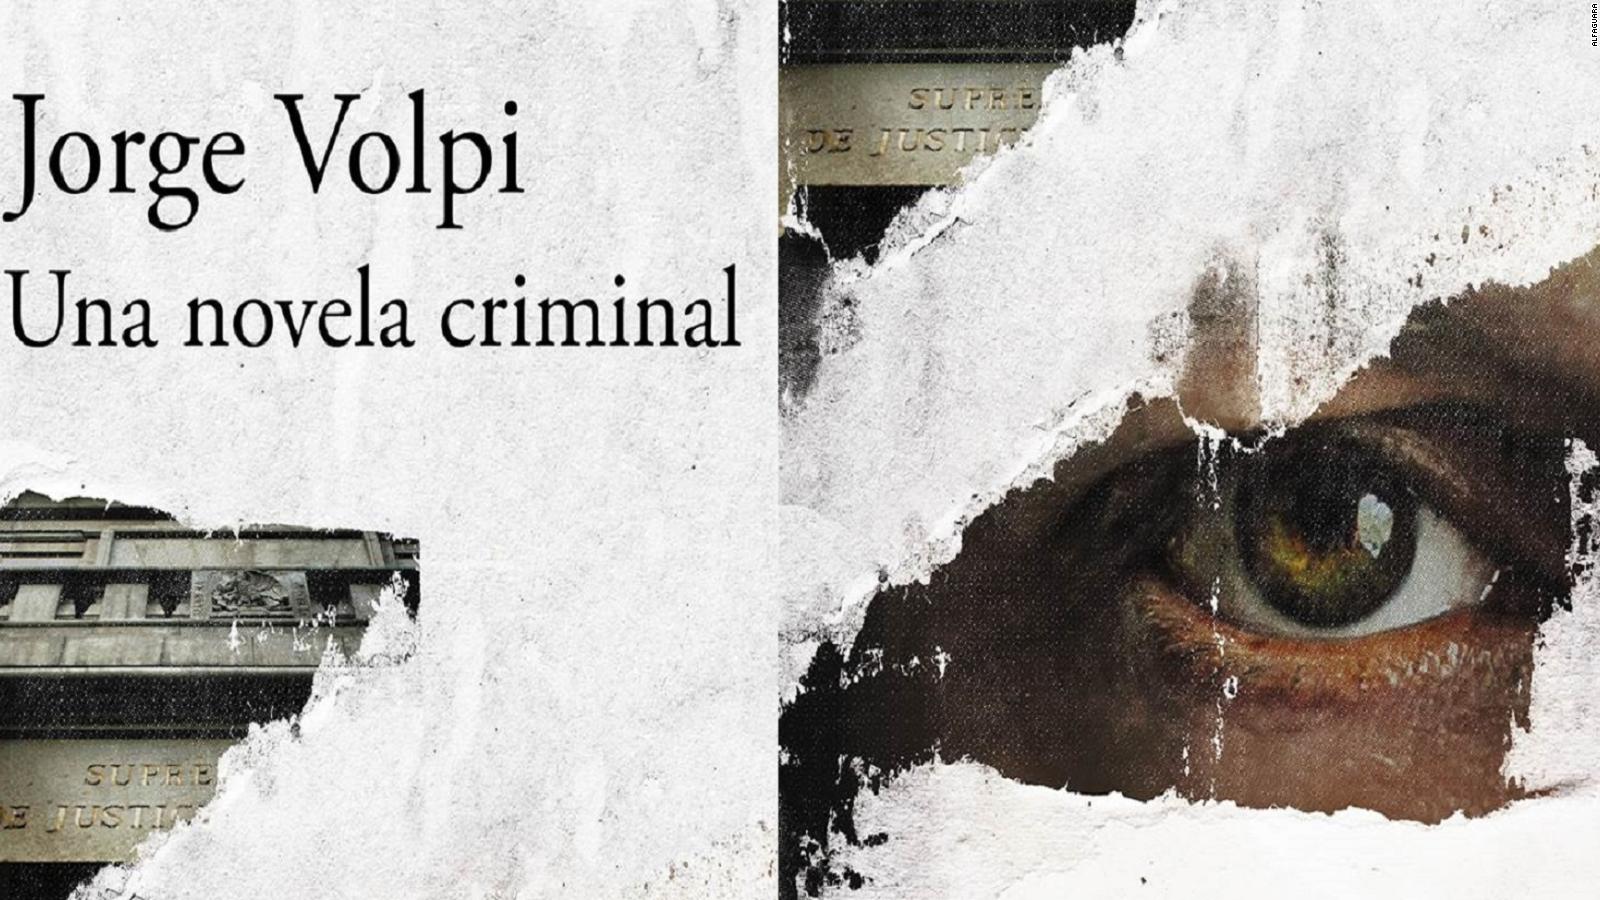 Una novela criminal, novela de Jorge Volpi en la que se basa la serie documental de Netflix